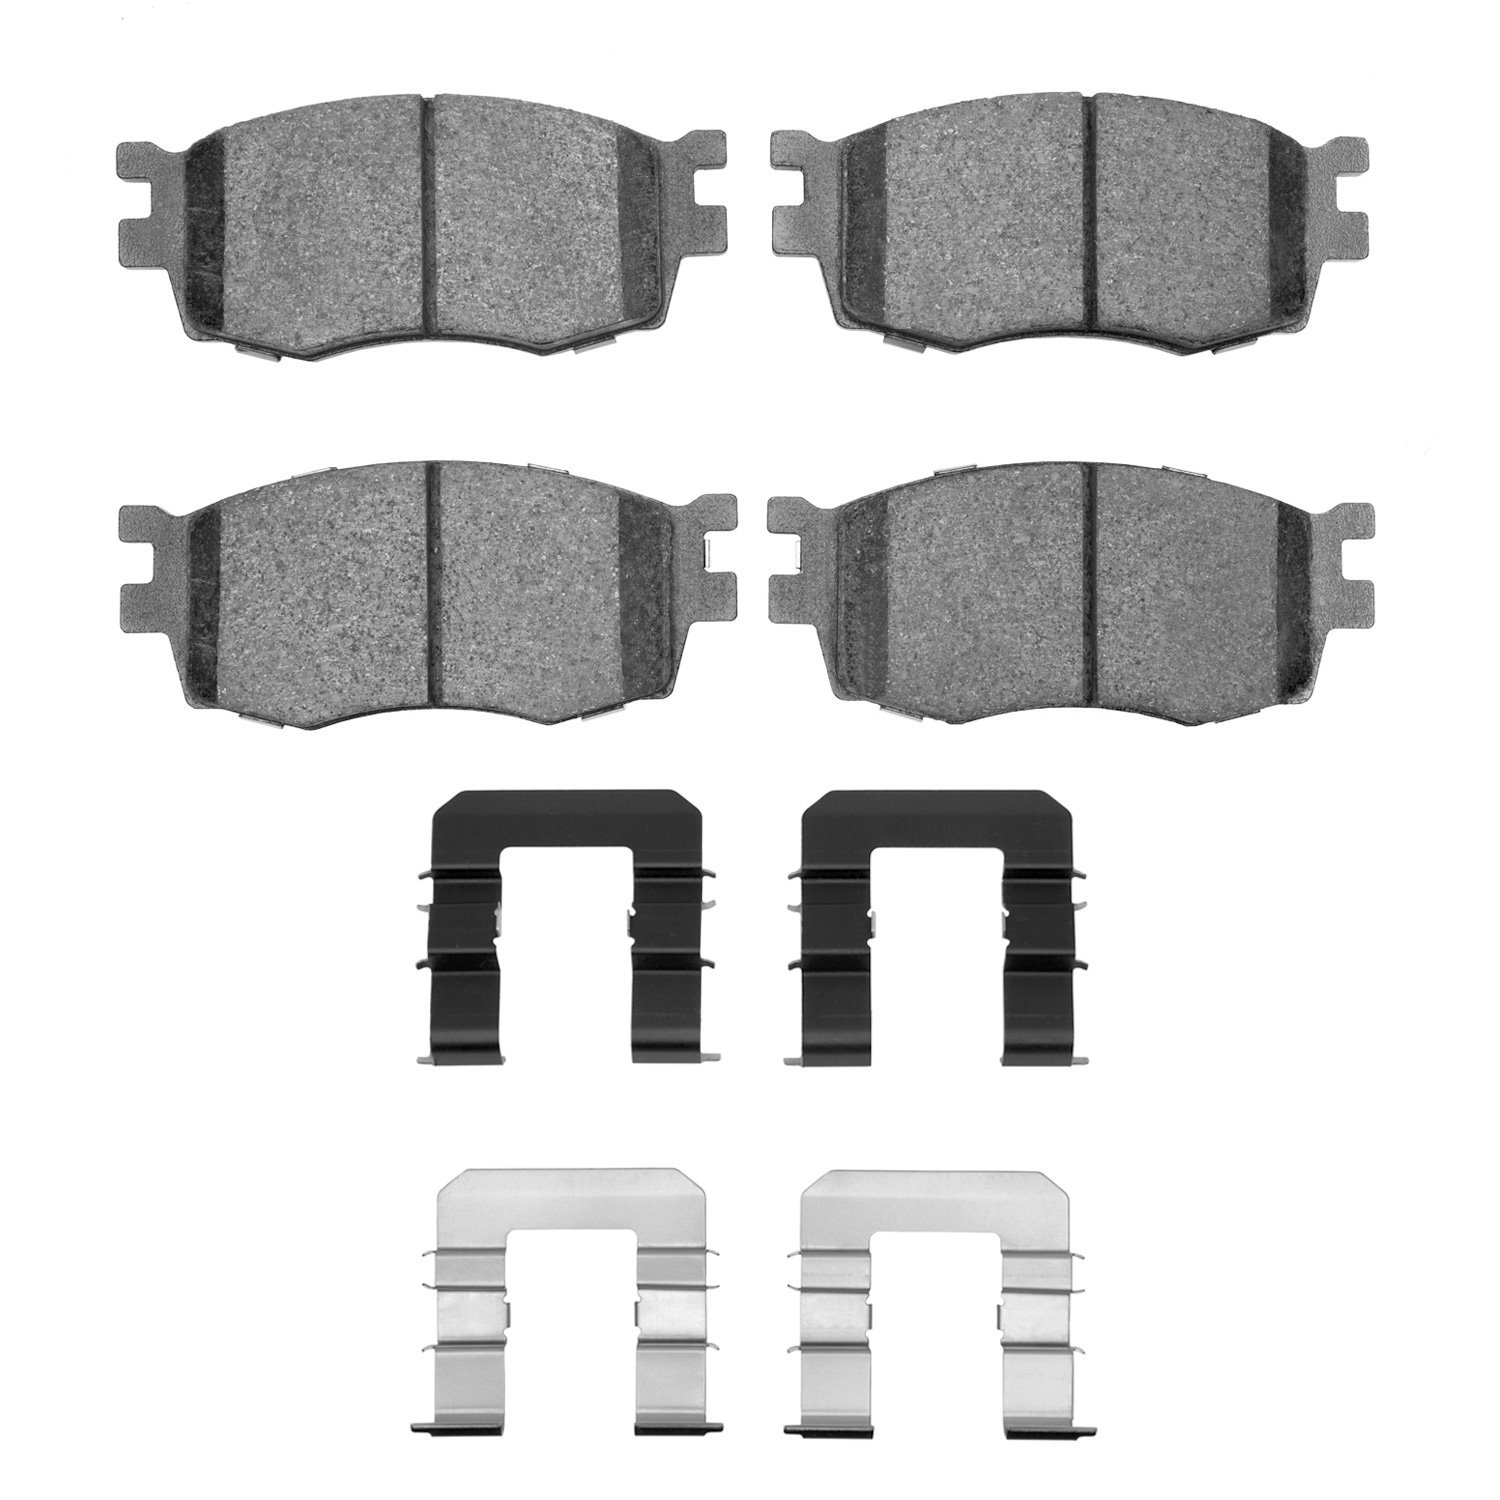 Ceramic Brake Pads & Hardware Kit, 2006-2012 Fits Multiple Makes/Models, Position: Front